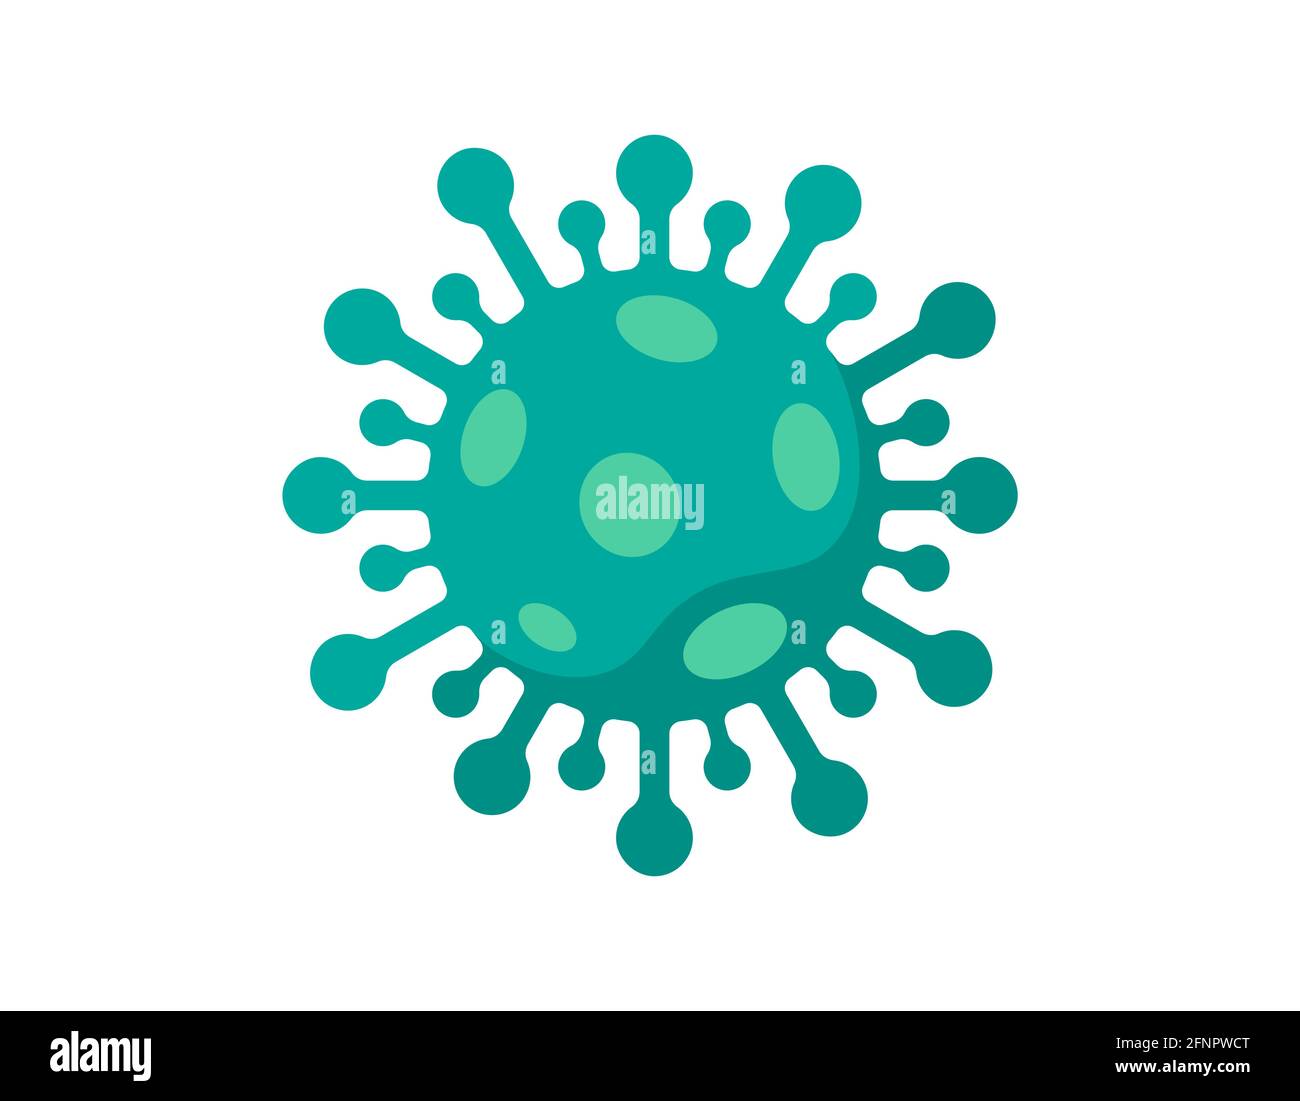 Icône verte de la cellule des bactéries coronavirus.2019-nCoV nouveau virus corona signe coloré.Maladie à risque d'infection respiratoire et emblème de l'épidémie de grippe Covid-19.Illustration eps à vecteur isolé Illustration de Vecteur